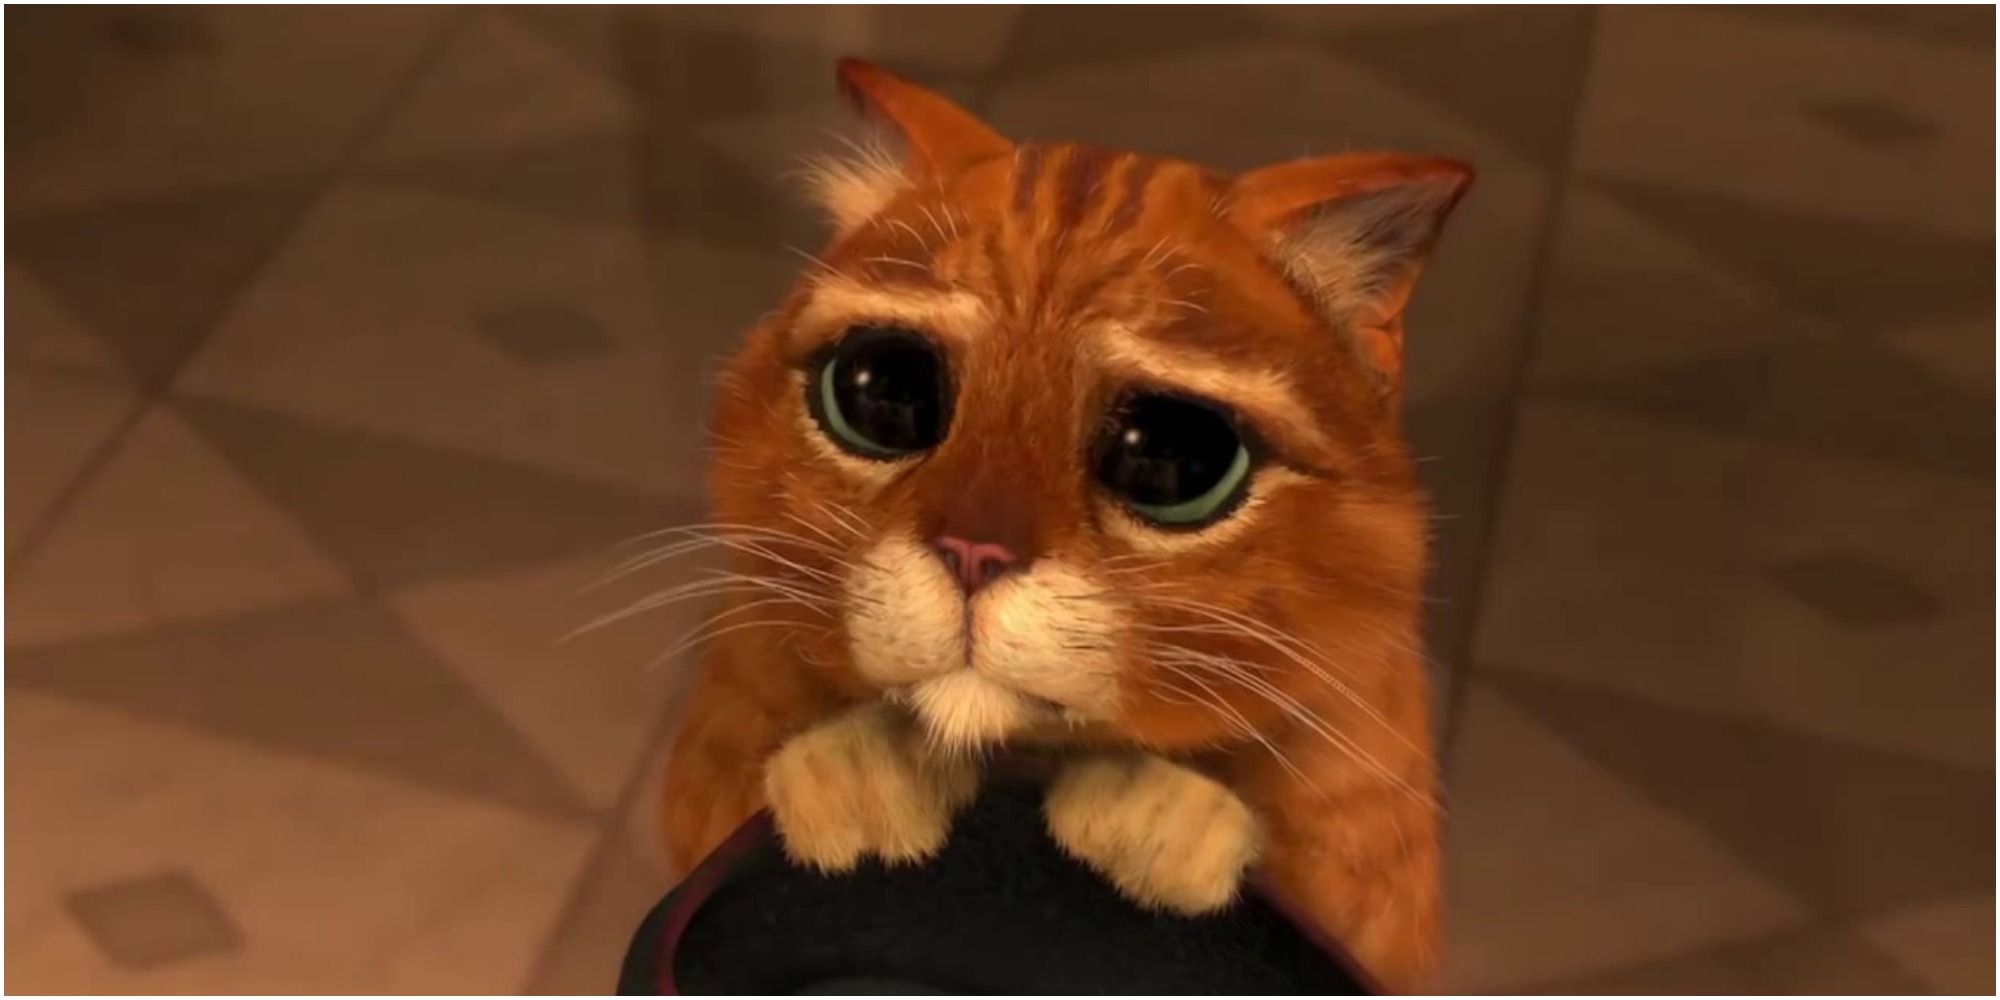 Antonio Banderas se burla del gato con botas 2 es inesperadamente emocional